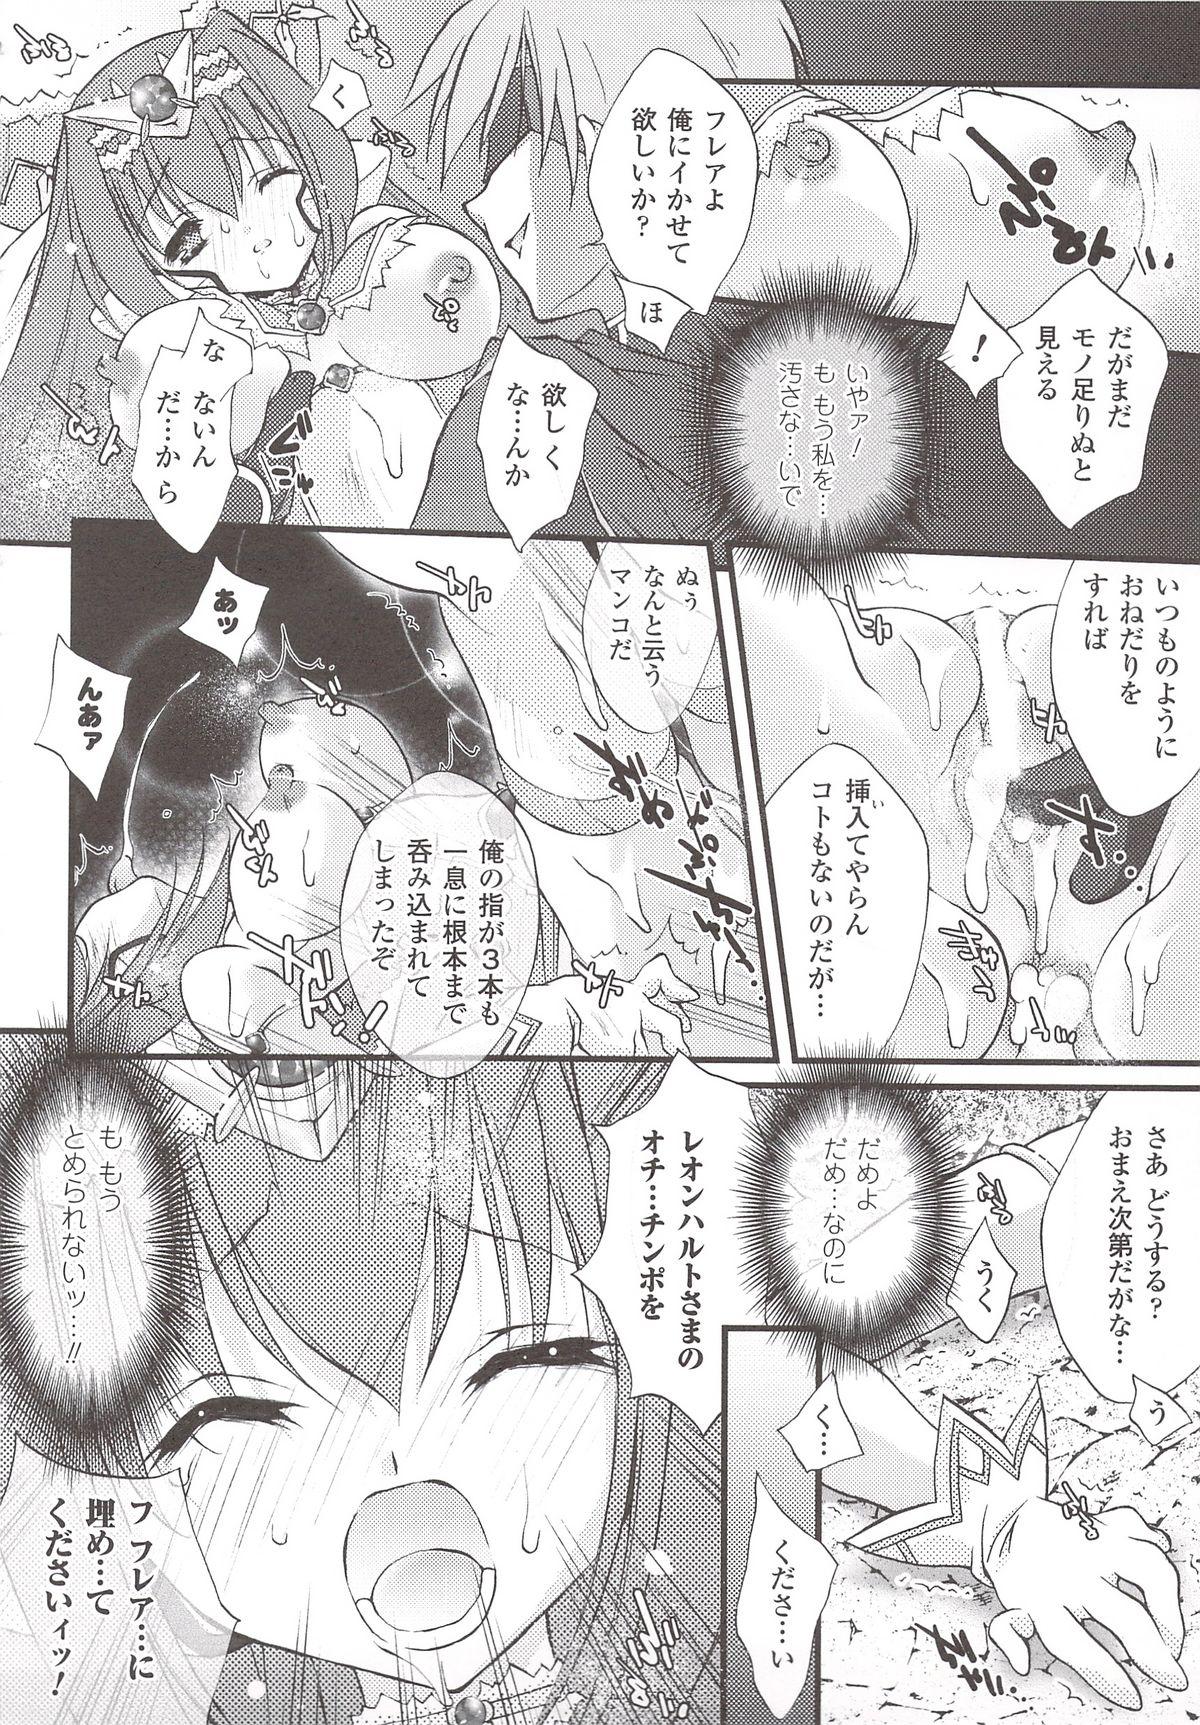 Suisei Tenshi Prima Veil Zwei Anthology Comic 54